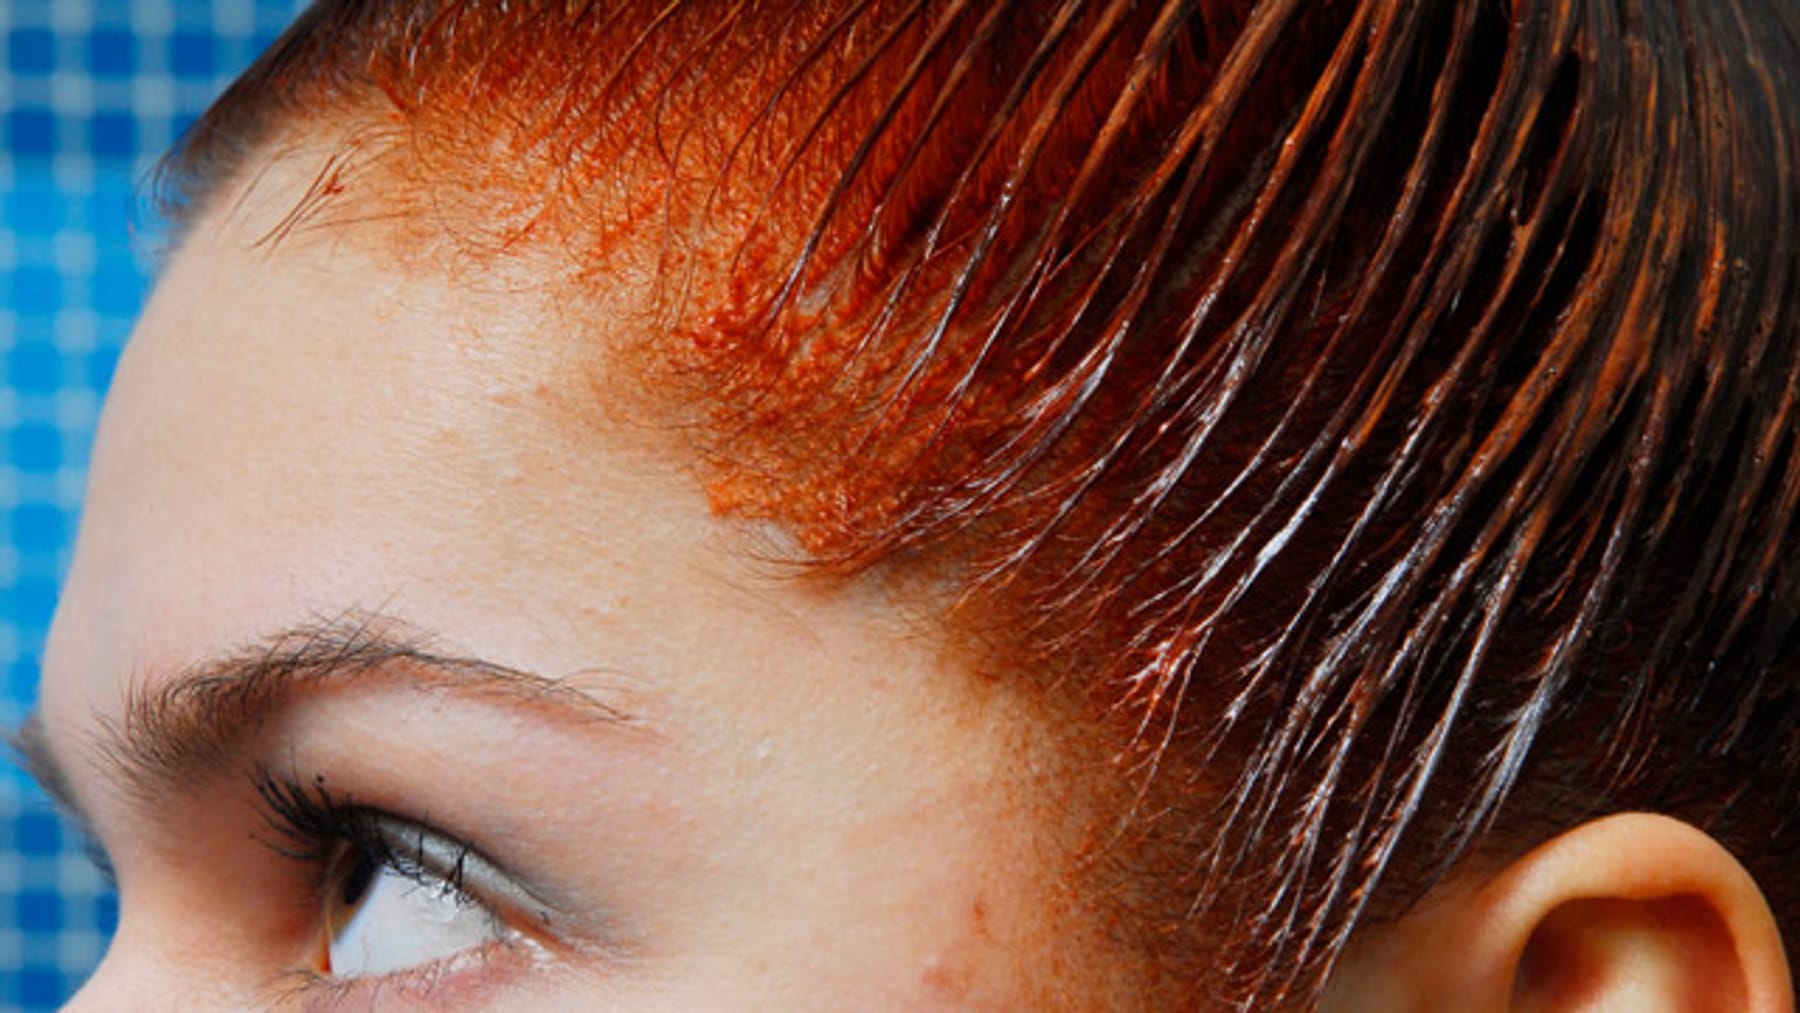 Чем смыть краску для волос с лица